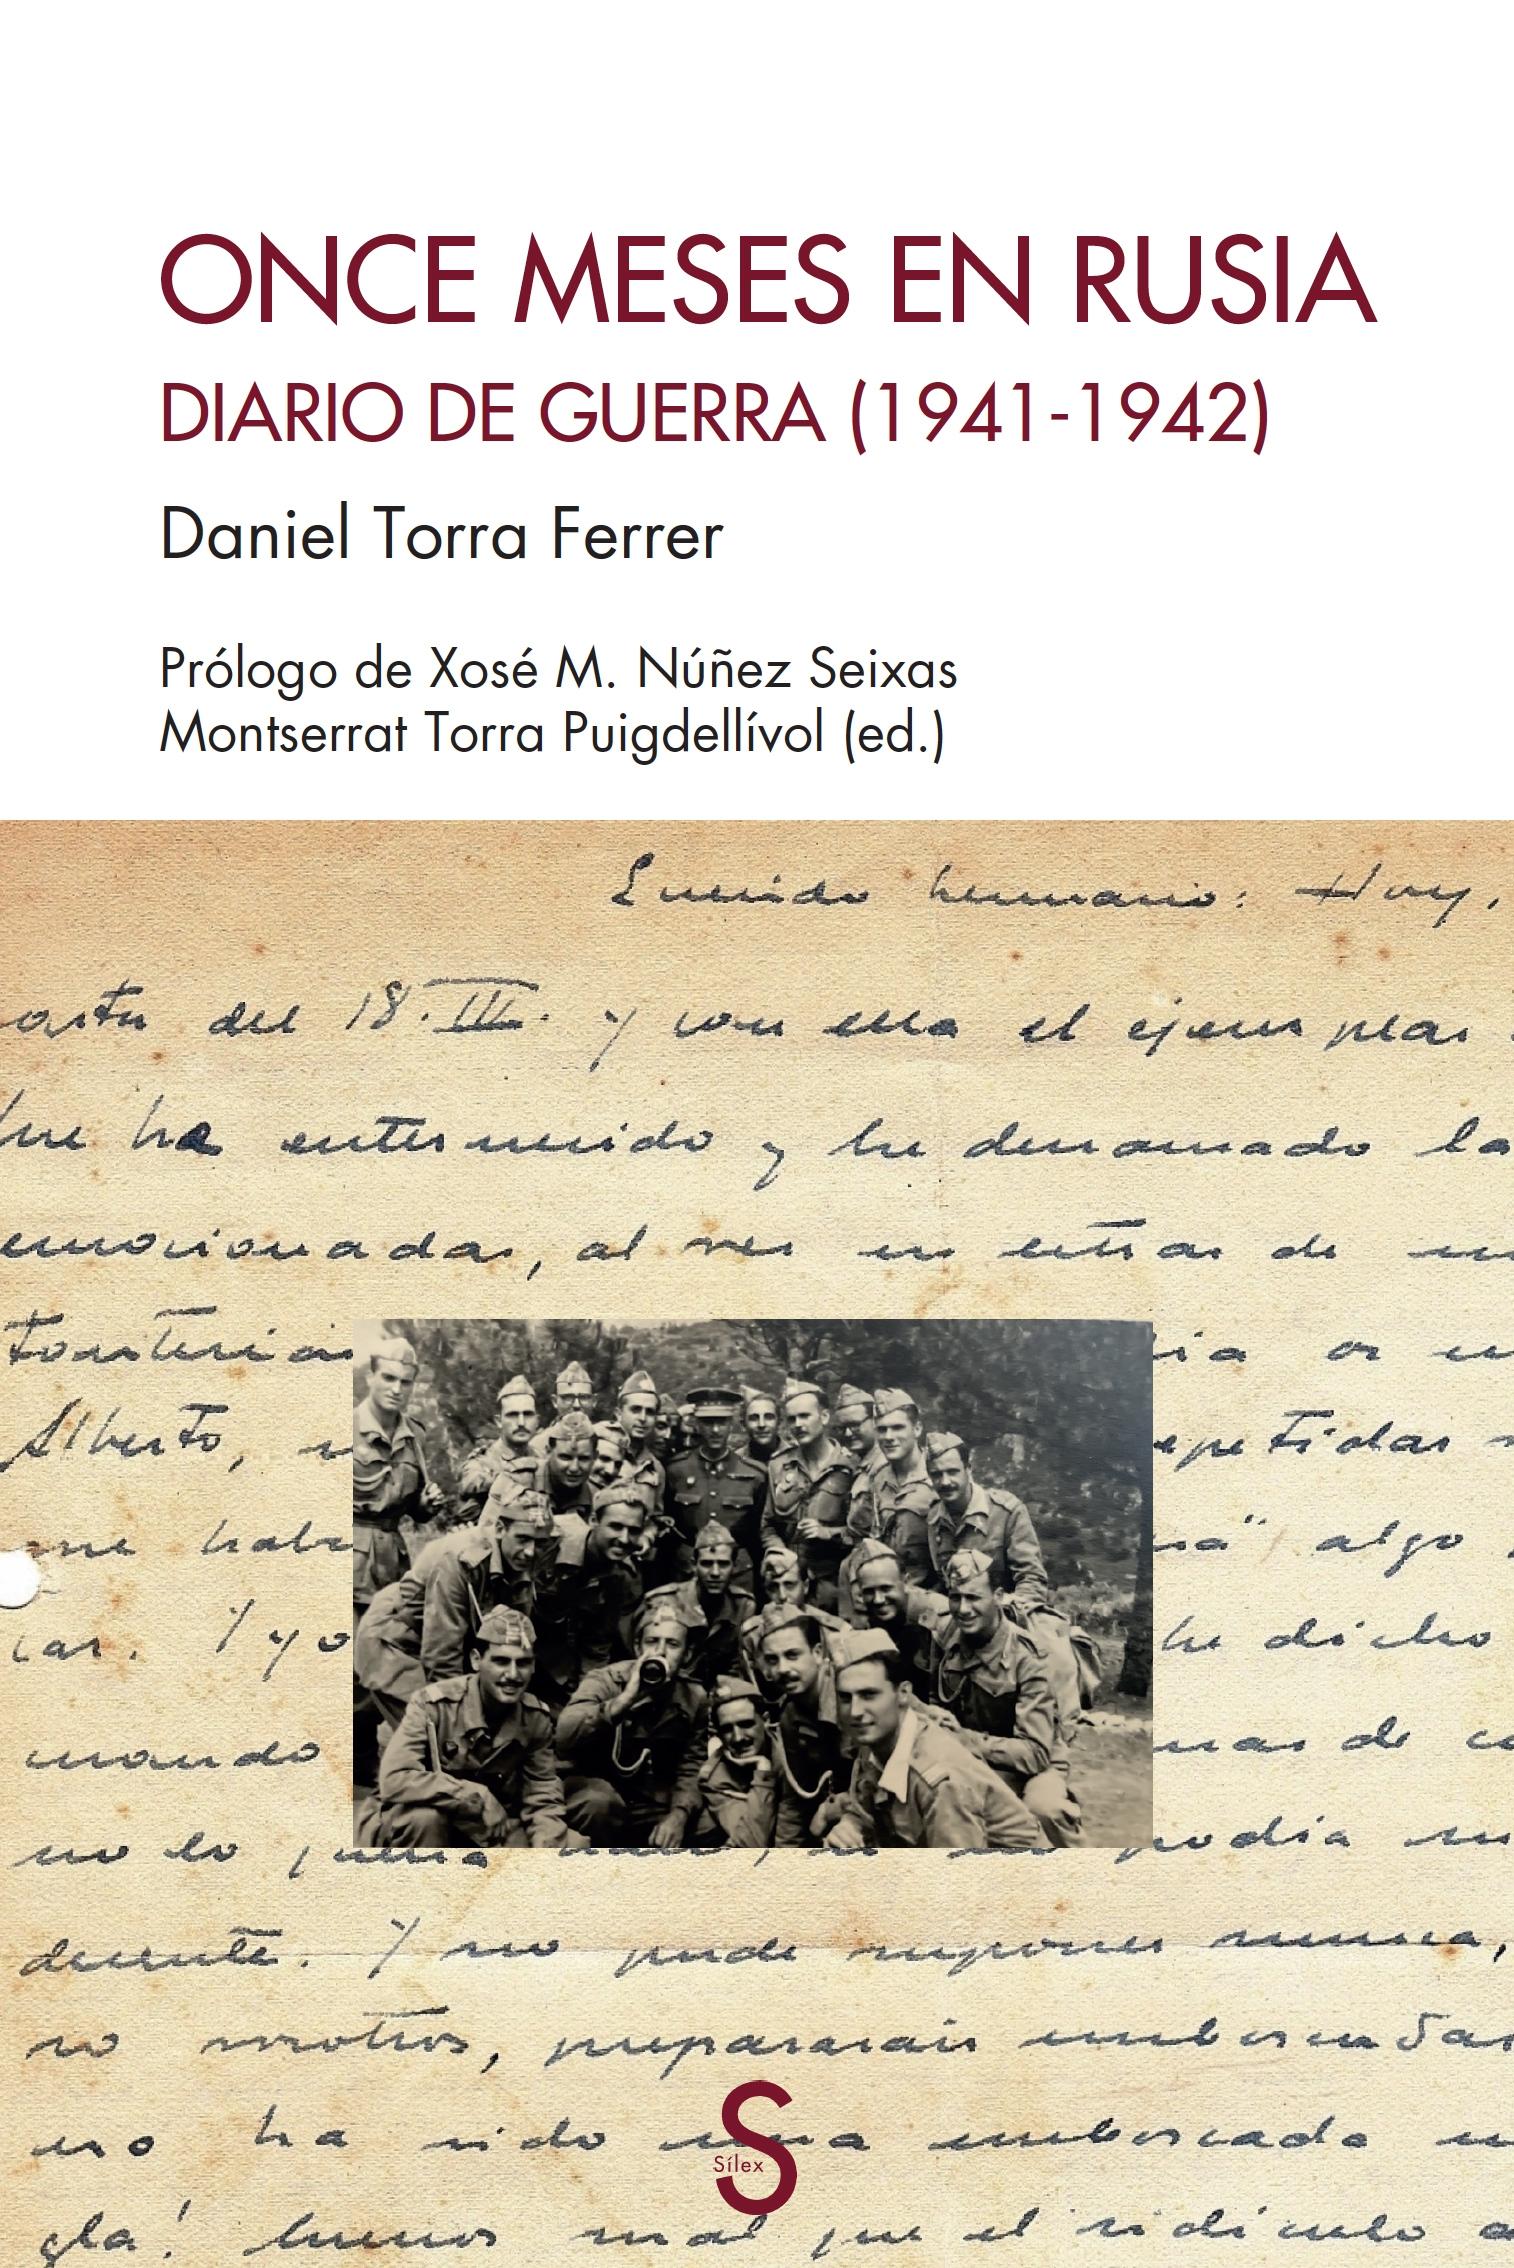 ONCE MESES EN RUSIA "DIARIO DE GUERRA (1941-1942)"